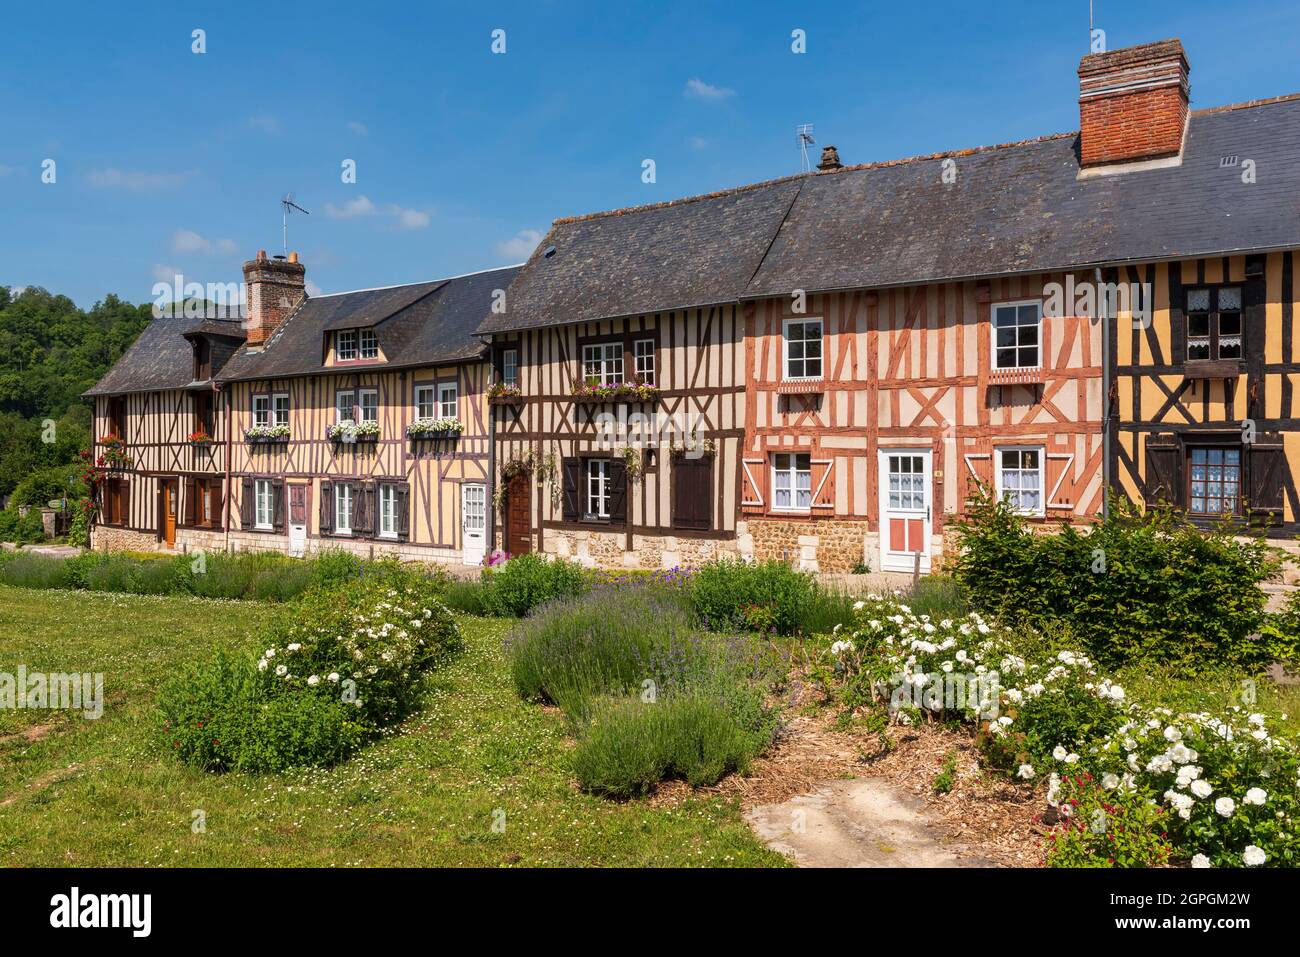 France, Eure, le bec Hellouin, étiqueté les plus Beaux villages de France (les plus beaux villages de France), maison à colombages de normand Banque D'Images